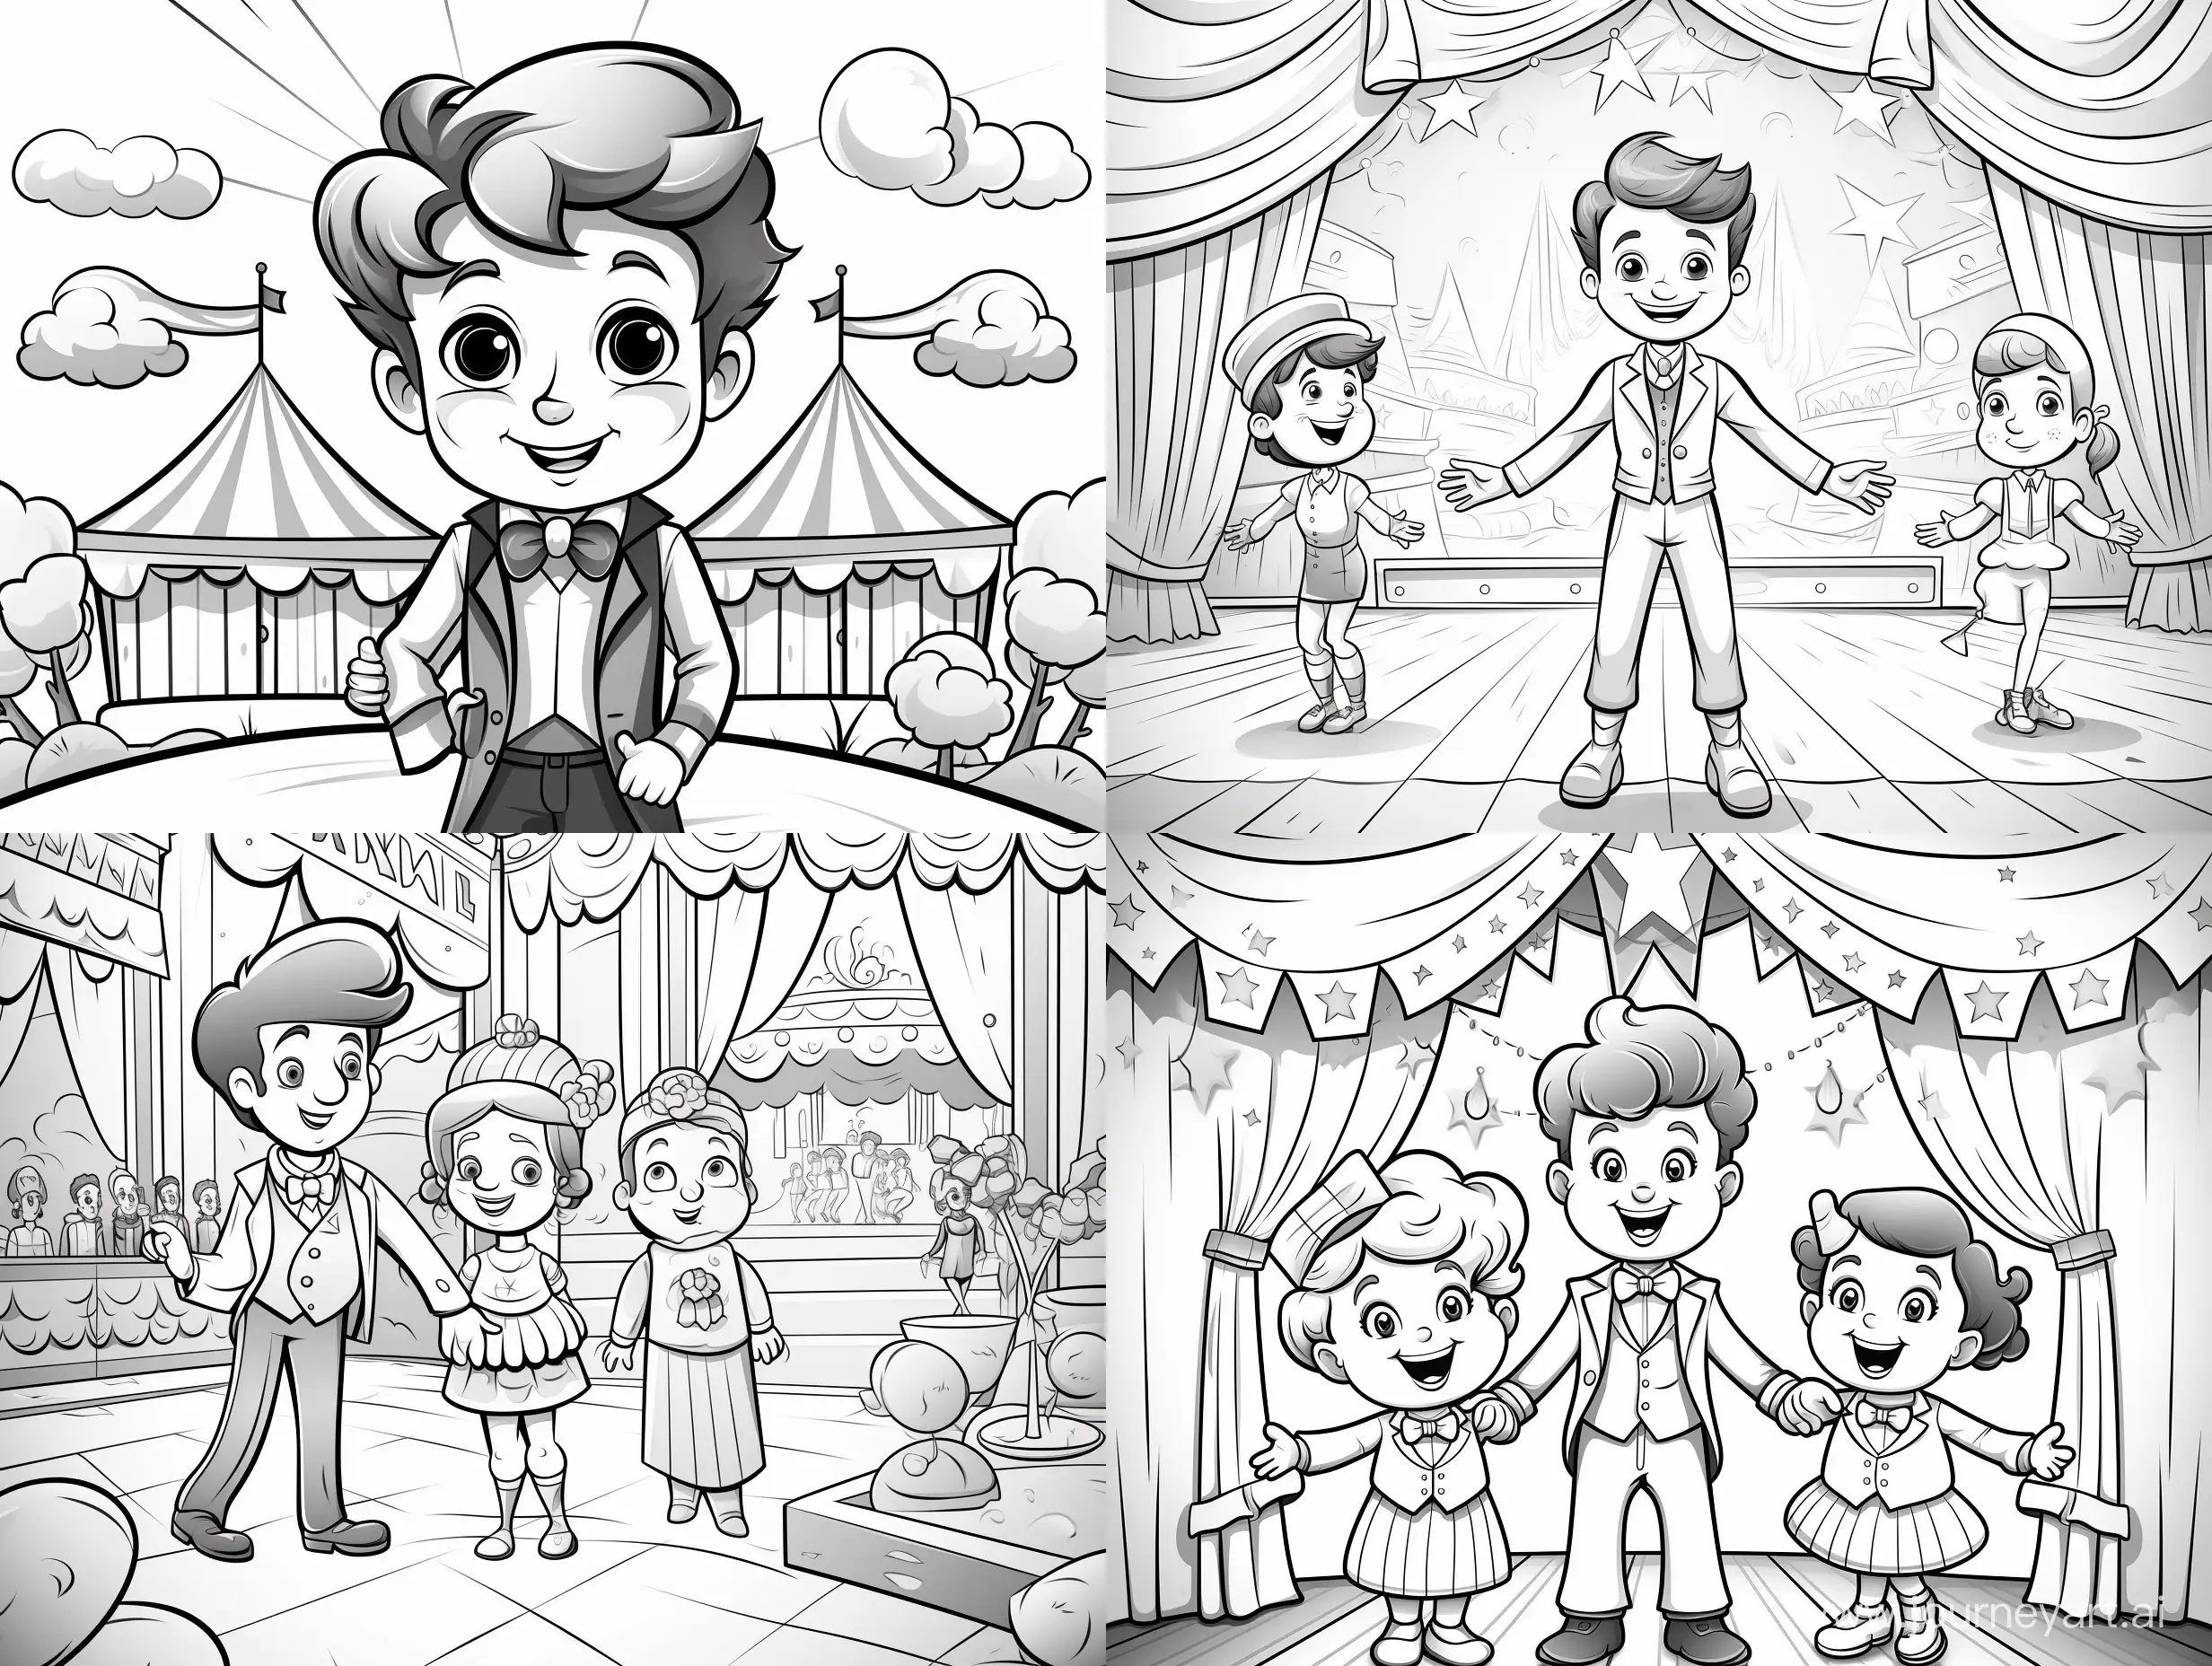 Joyful-Kids-Creating-a-Circus-Show-Cartoon-Coloring-Page